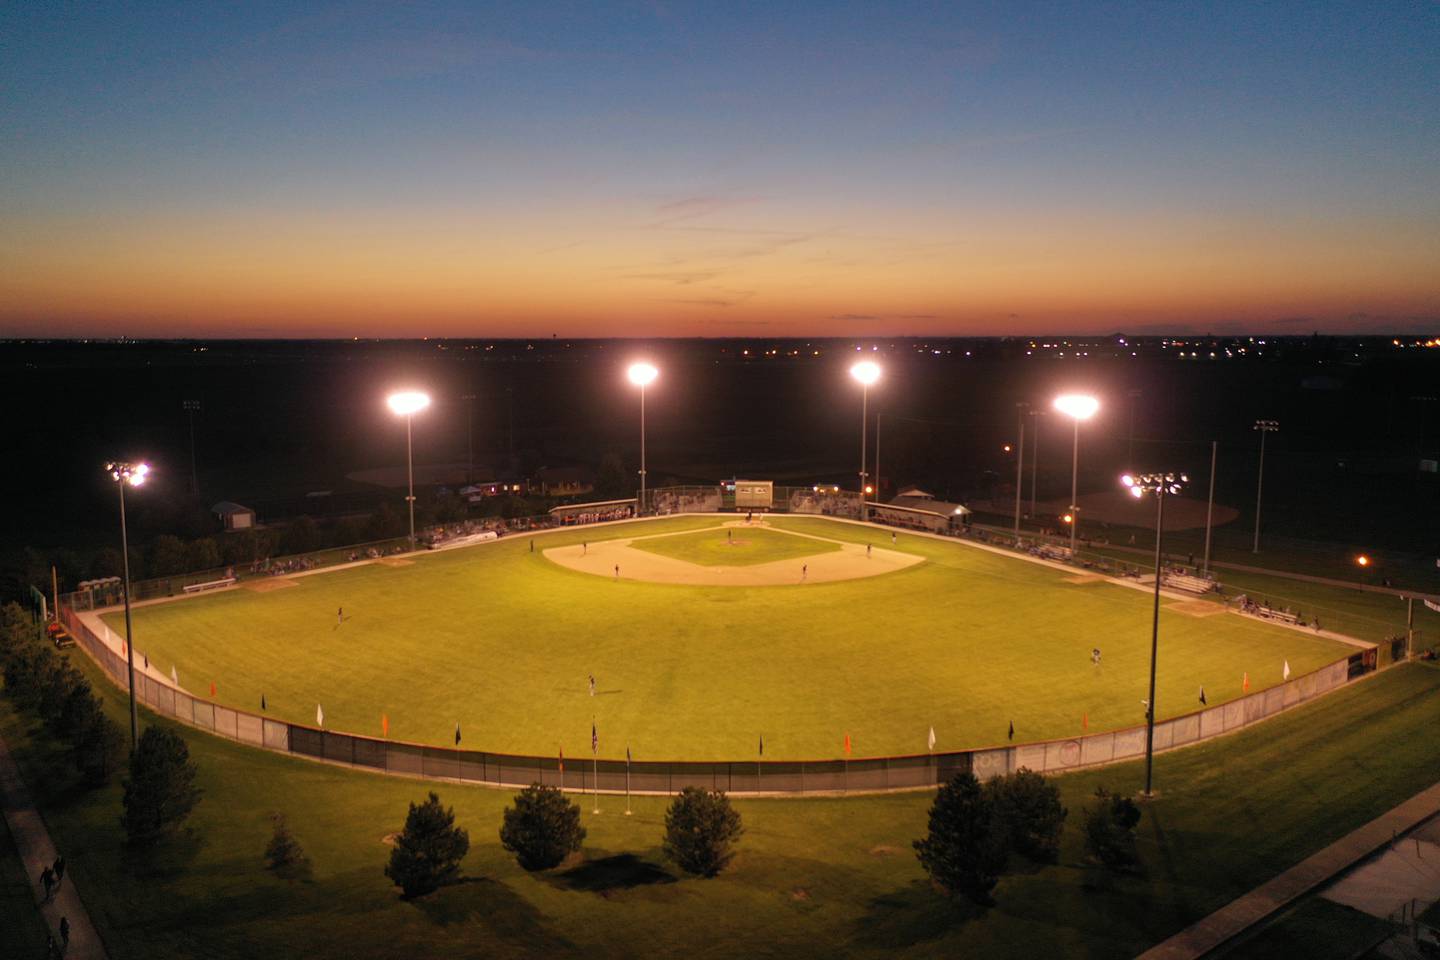 The sun sets during the Illinois Valley Pistol Shrimp's home opener against Rex Baseball on Thursday, June 2, 2022 at Veterans Park in Peru.